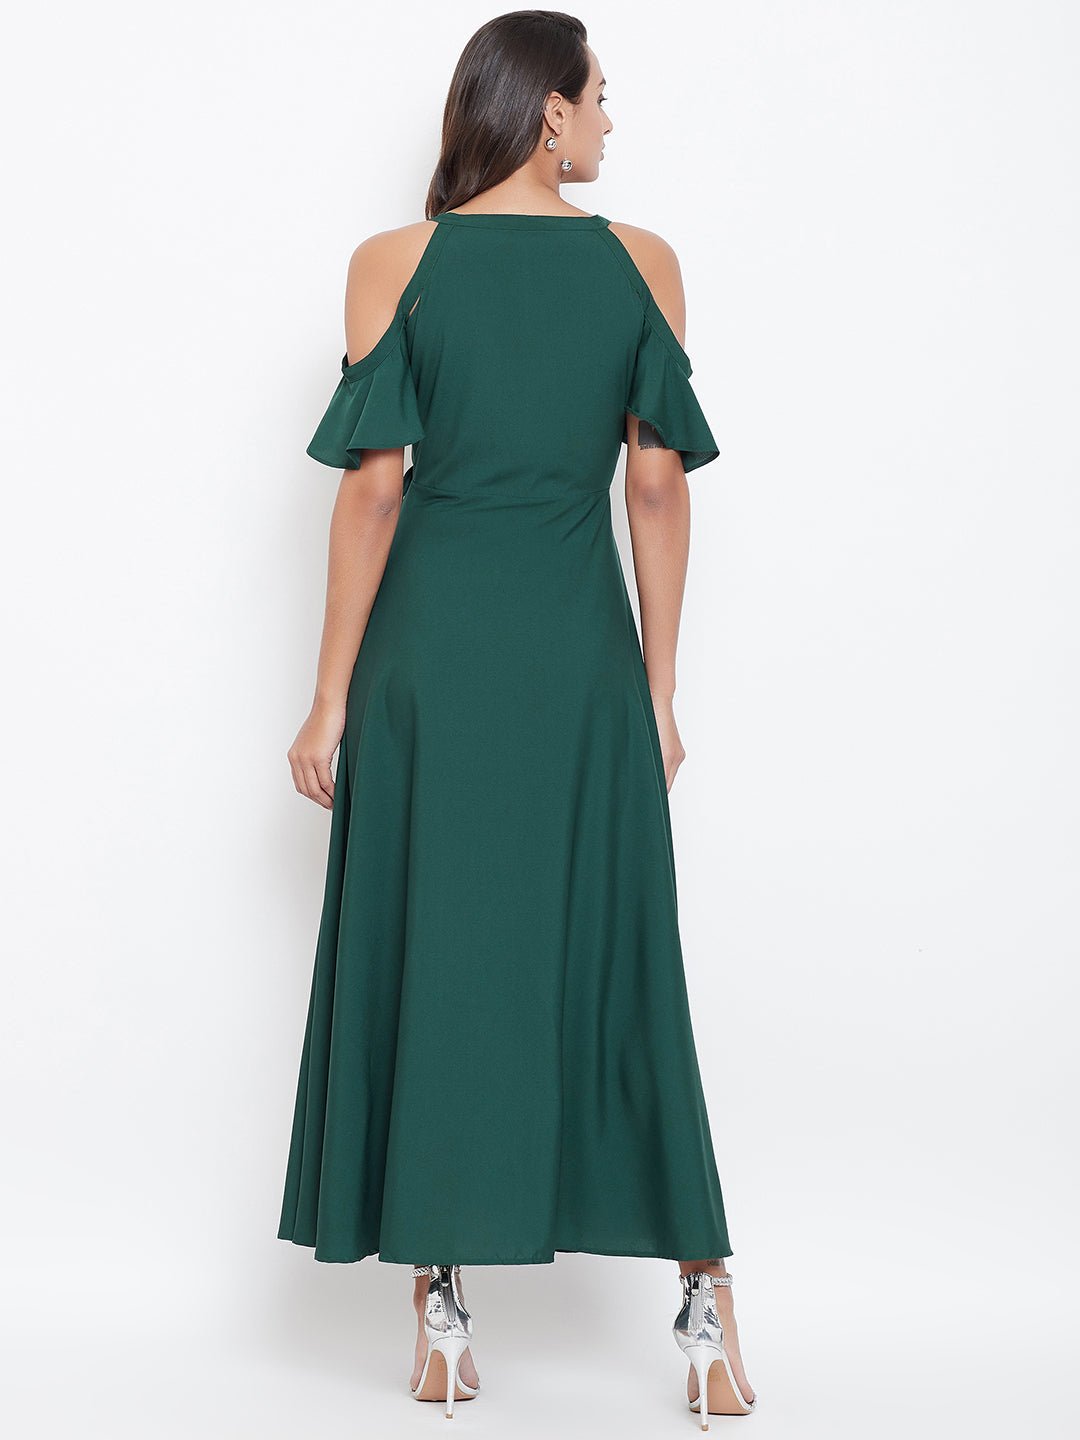 Folk Republic Women Solid Green V-Neck Cold-Shoulder Maxi Dress - #folk republic#